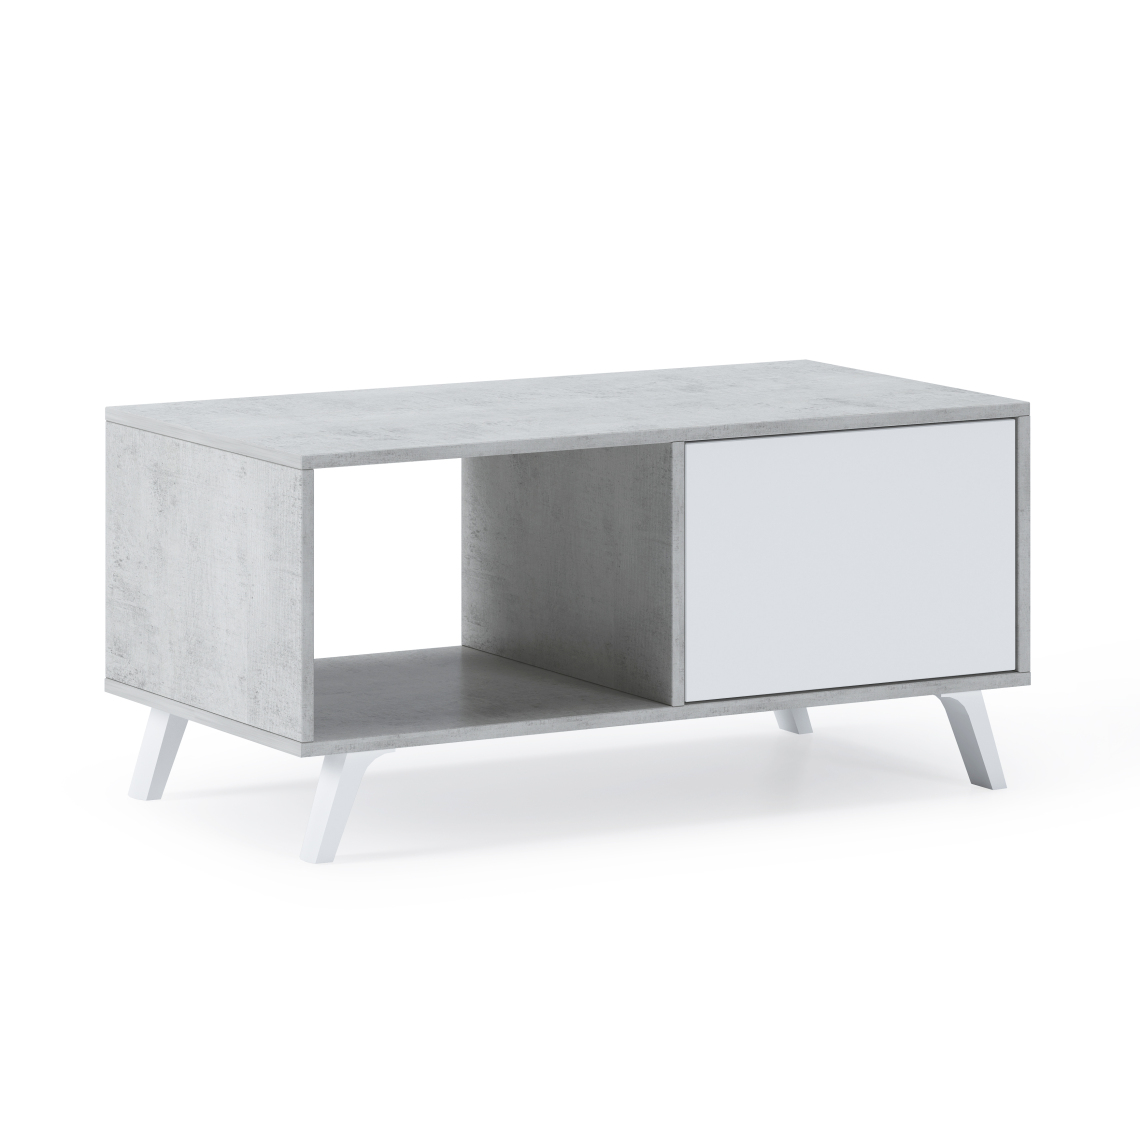 Skraut Home - Table basse WIND Ciment-Blanc Mat, 92x50x45cm - Tables basses